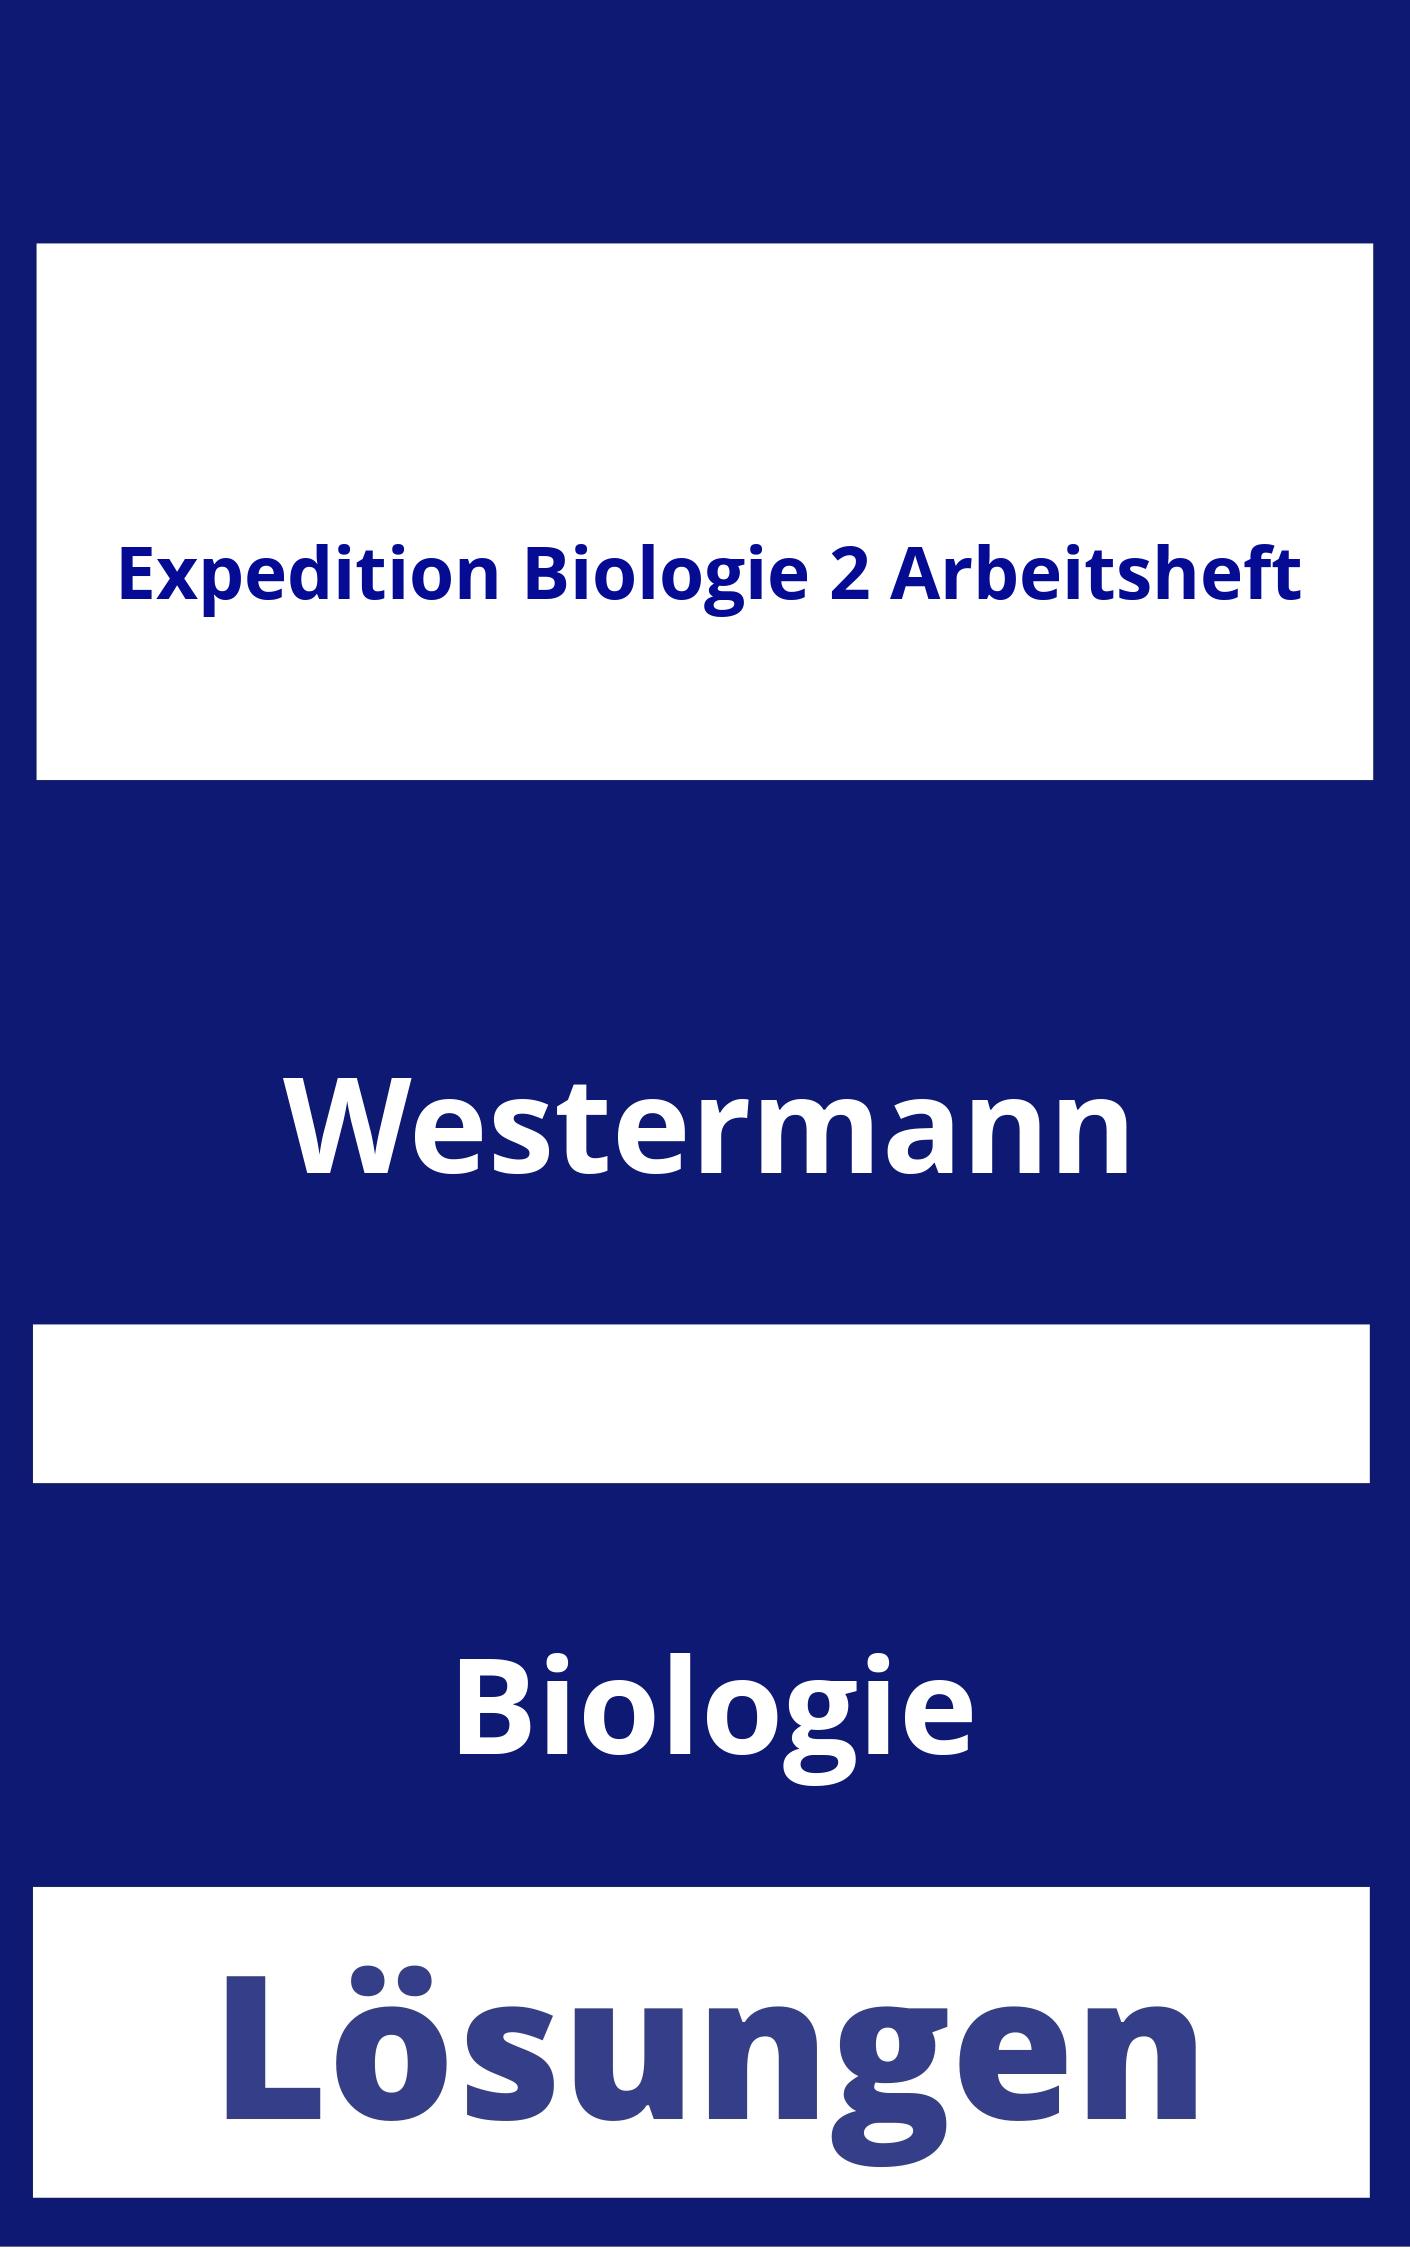 Expedition Biologie 2 Arbeitsheft